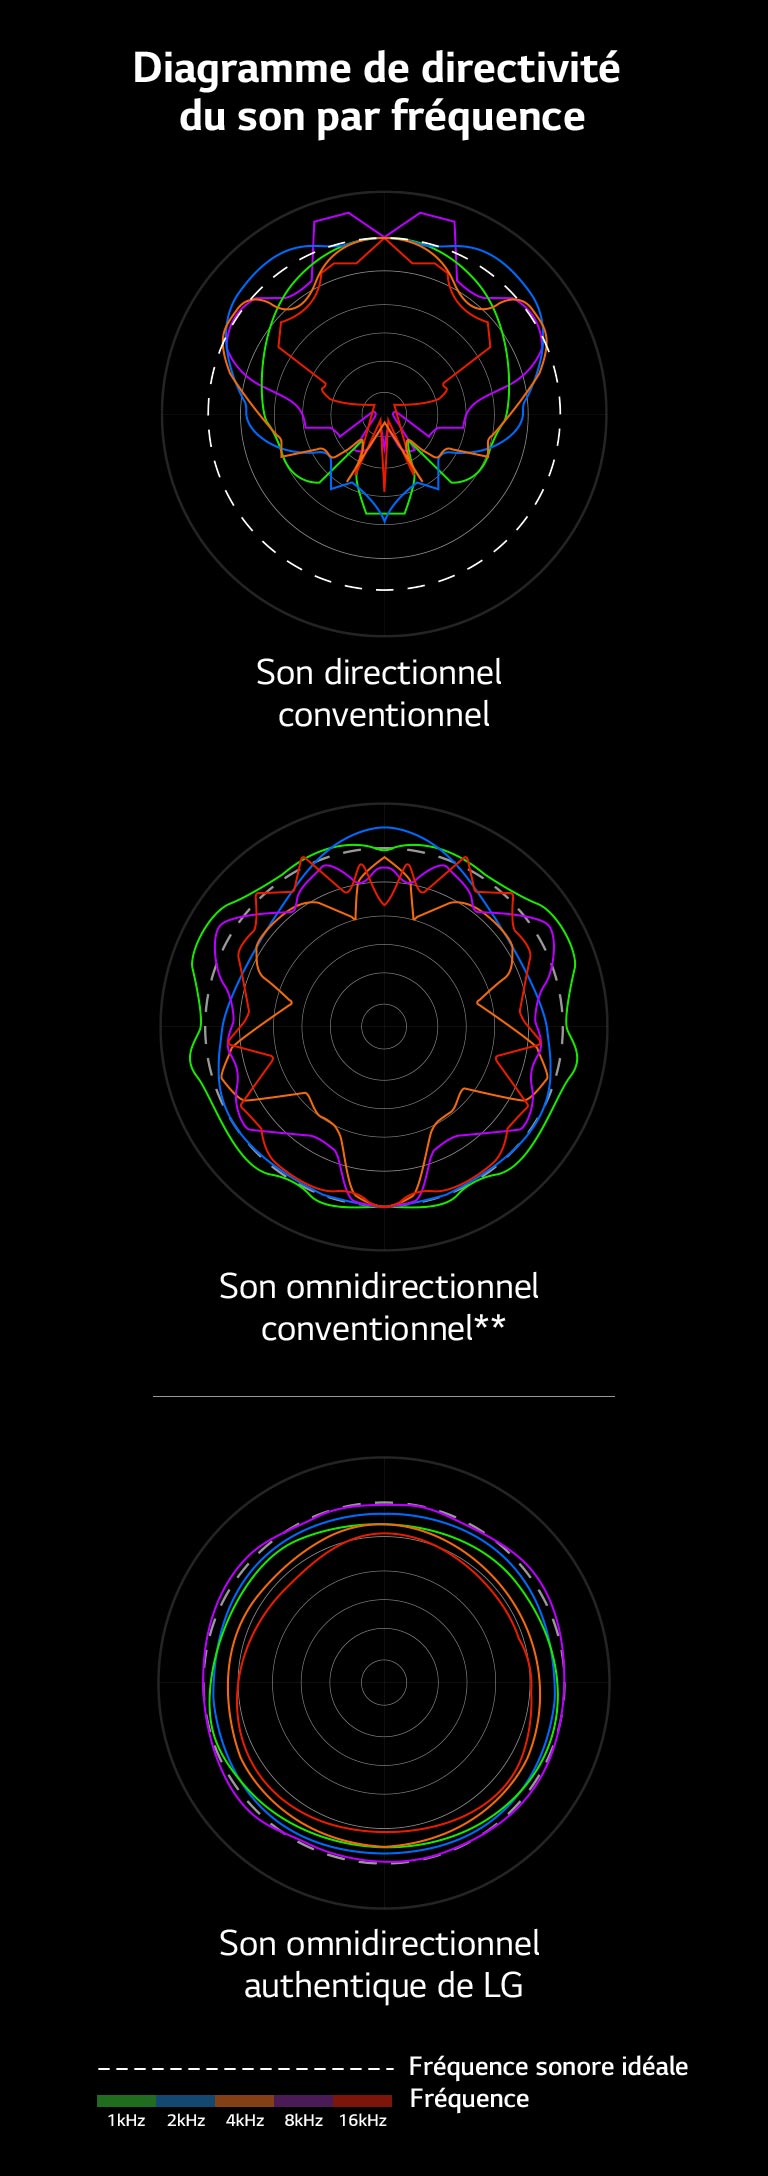 Une image qui compare les longueurs d’ondes sonores du son directionnel conventionnel et du son omnidirectionnel conventionnel avec celles du son omnidirectionnel authentique de LG.